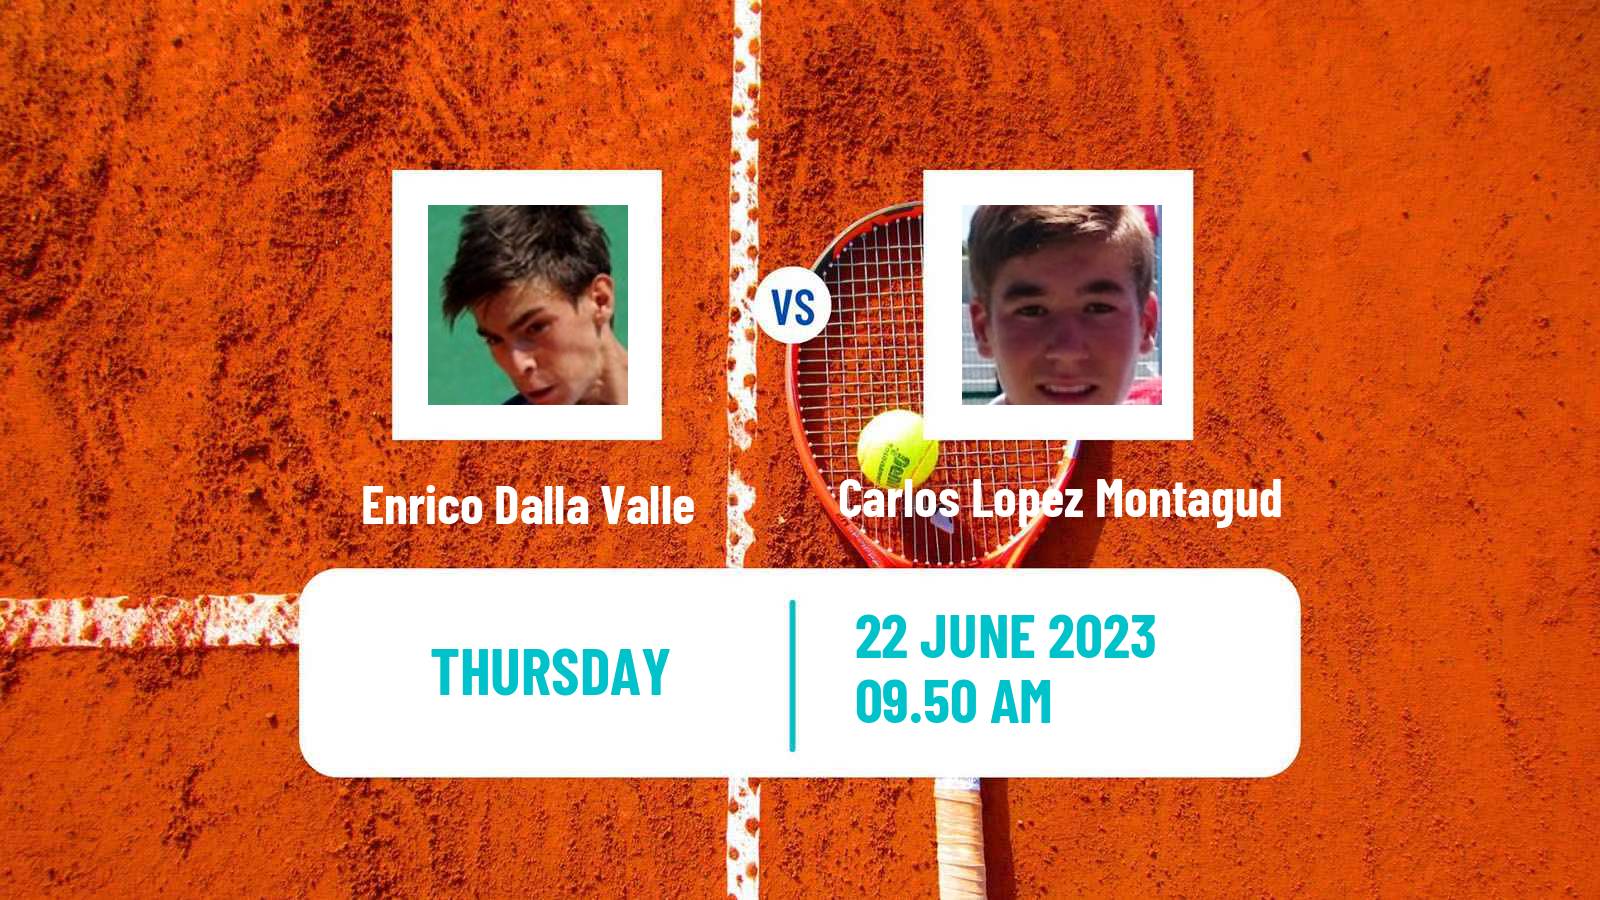 Tennis ITF M25 Cattolica Men Enrico Dalla Valle - Carlos Lopez Montagud